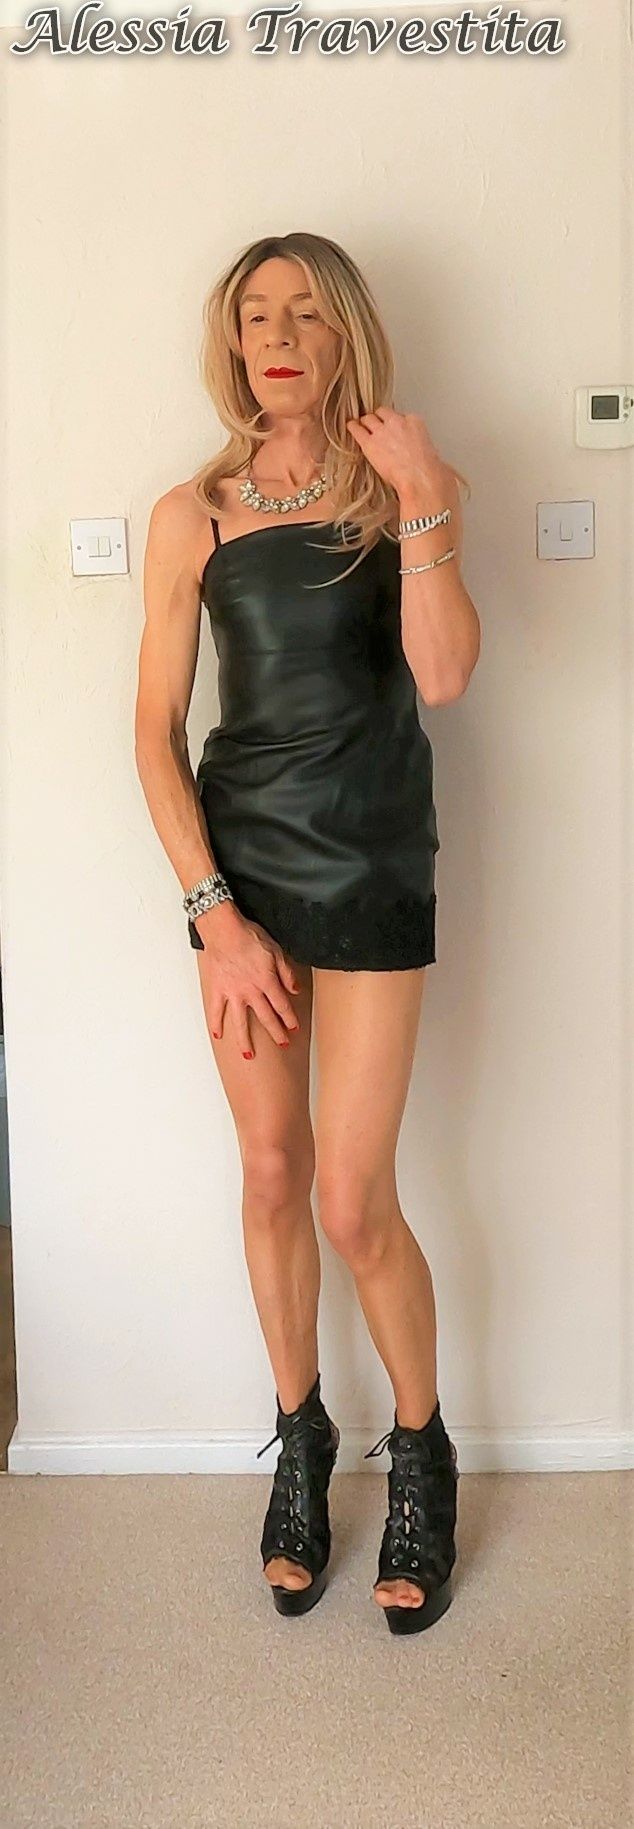 79 Alessia Travestita in Black Leather Dress #23